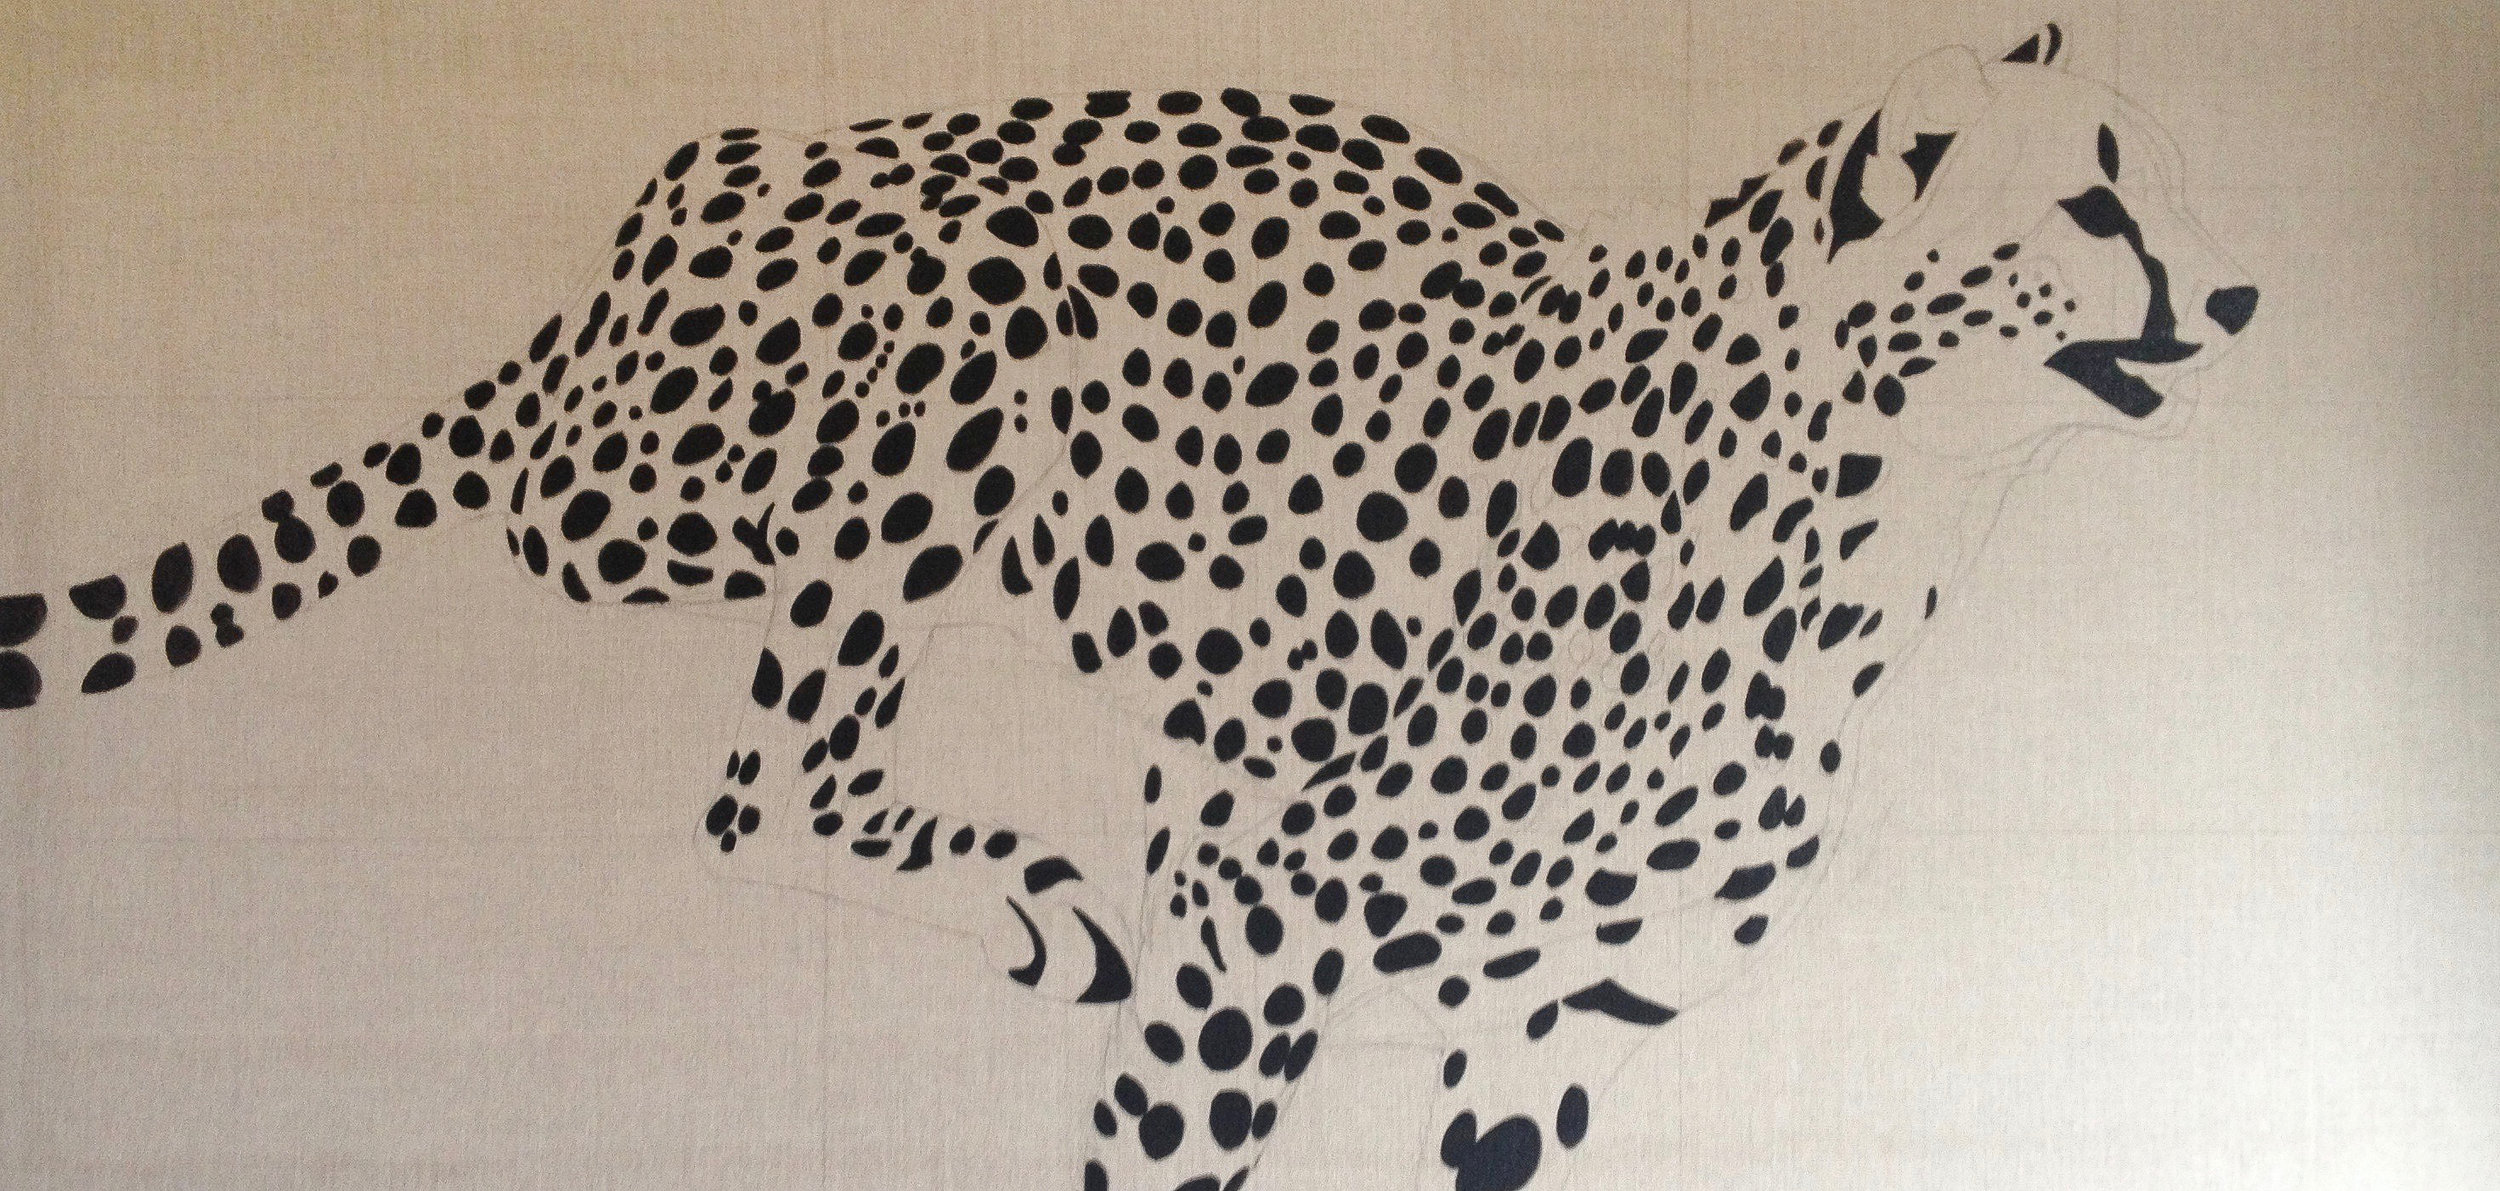 Running Cheetah Painting 1-3.jpg